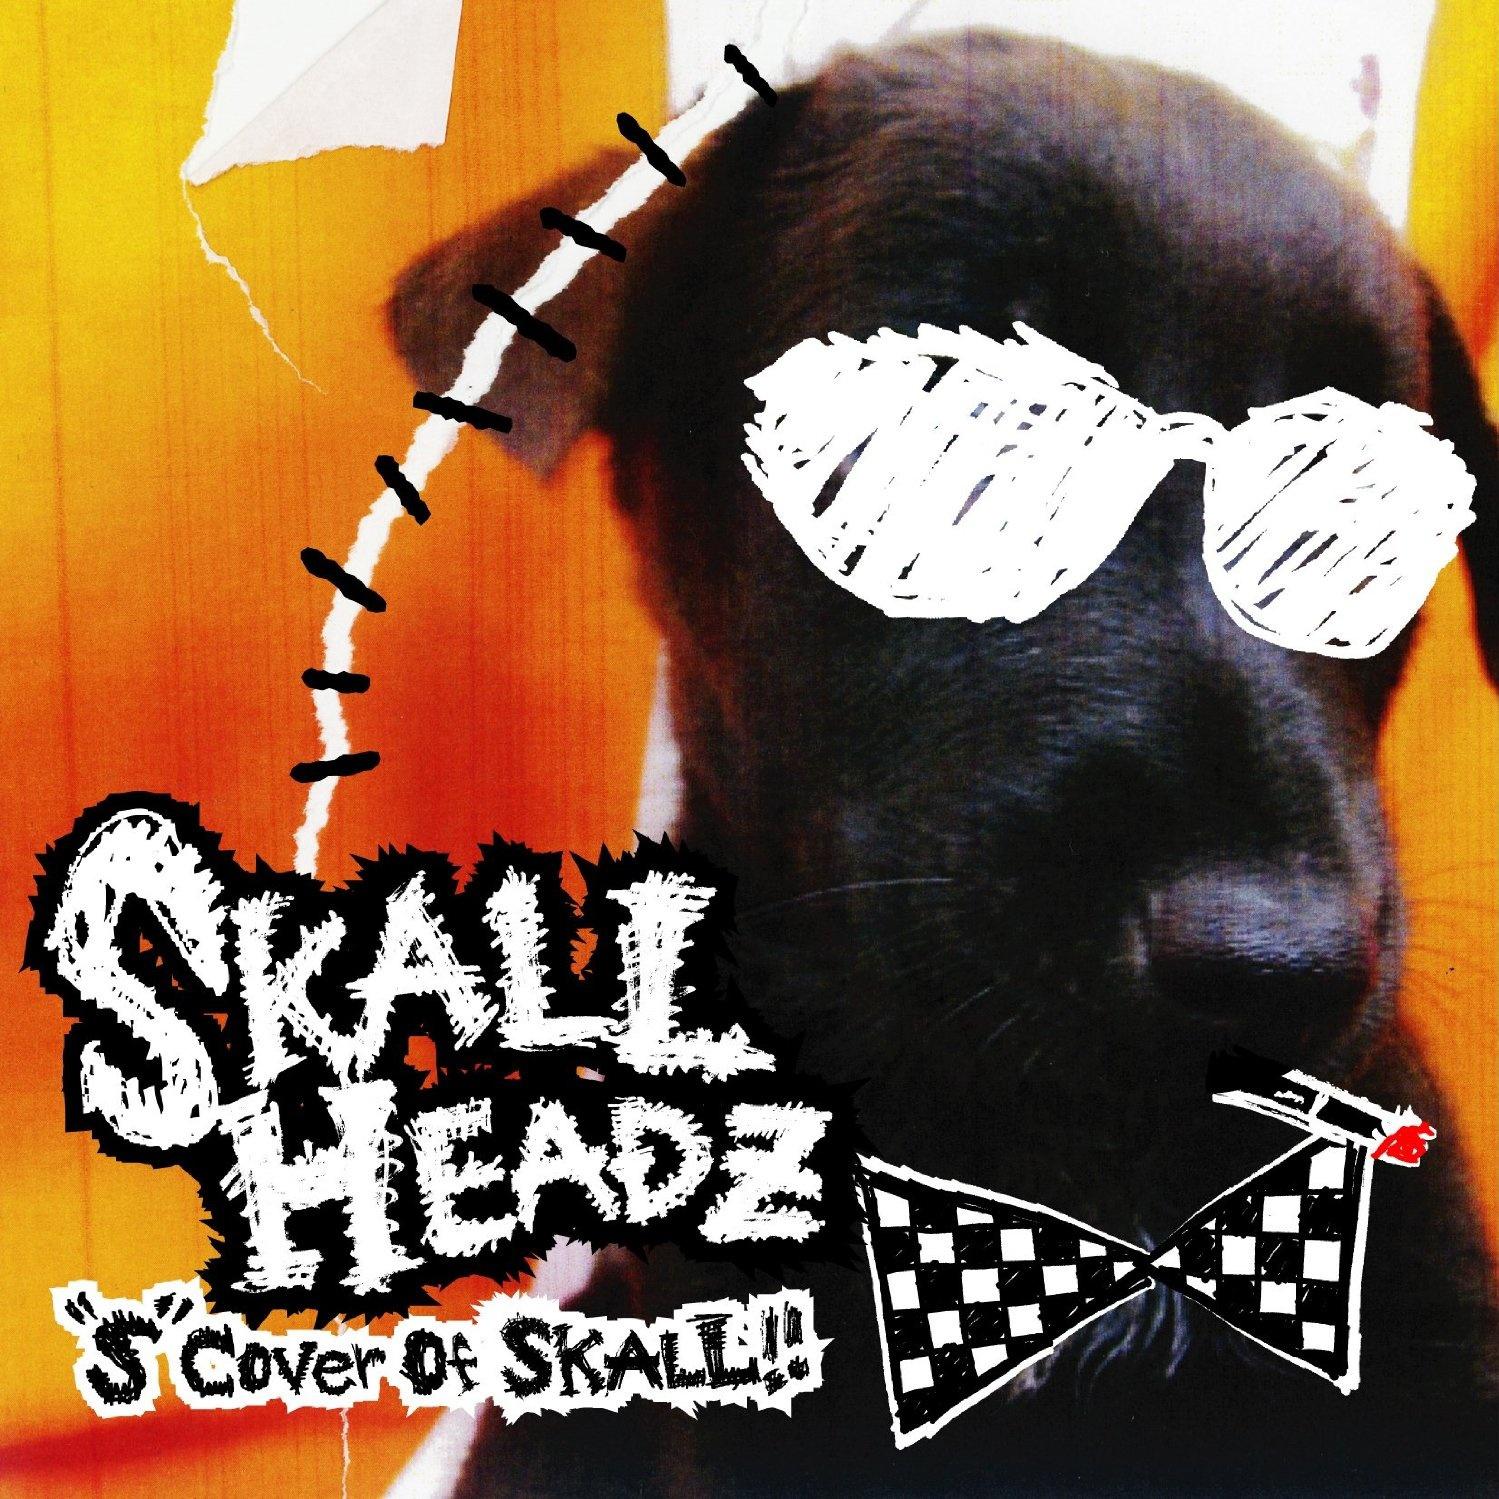 SKALL HEADZ. 播 放 收 藏 分 享 下 载. 歌 手. 发 行 时 间.2010-11-17. 评 论. 